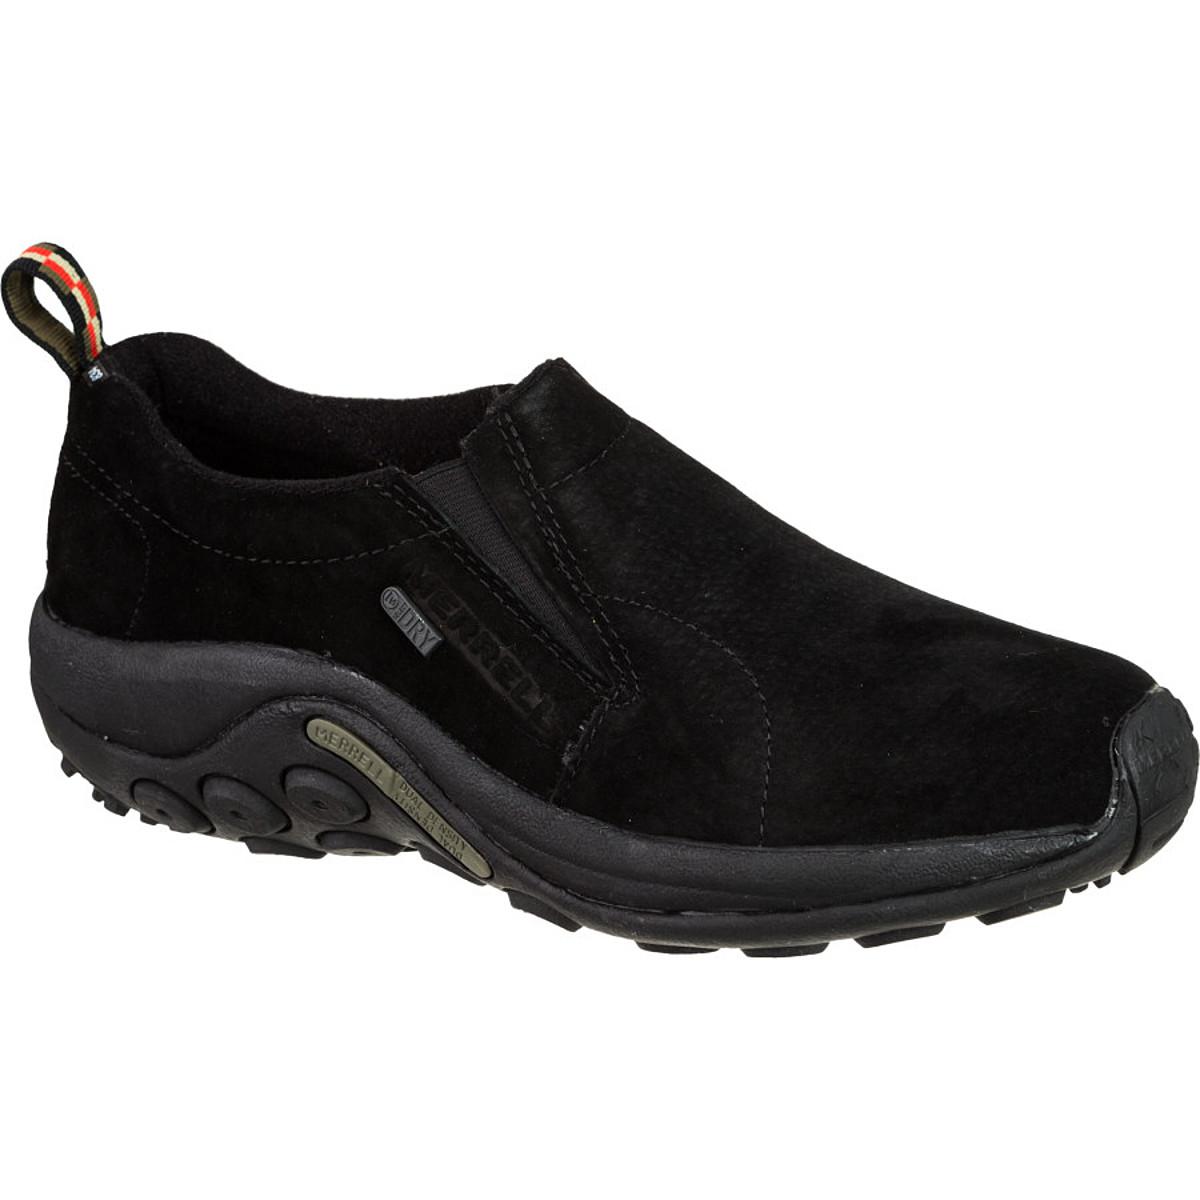 Merrell Leather Jungle Moc Waterproof Shoe in Black for Men - Lyst